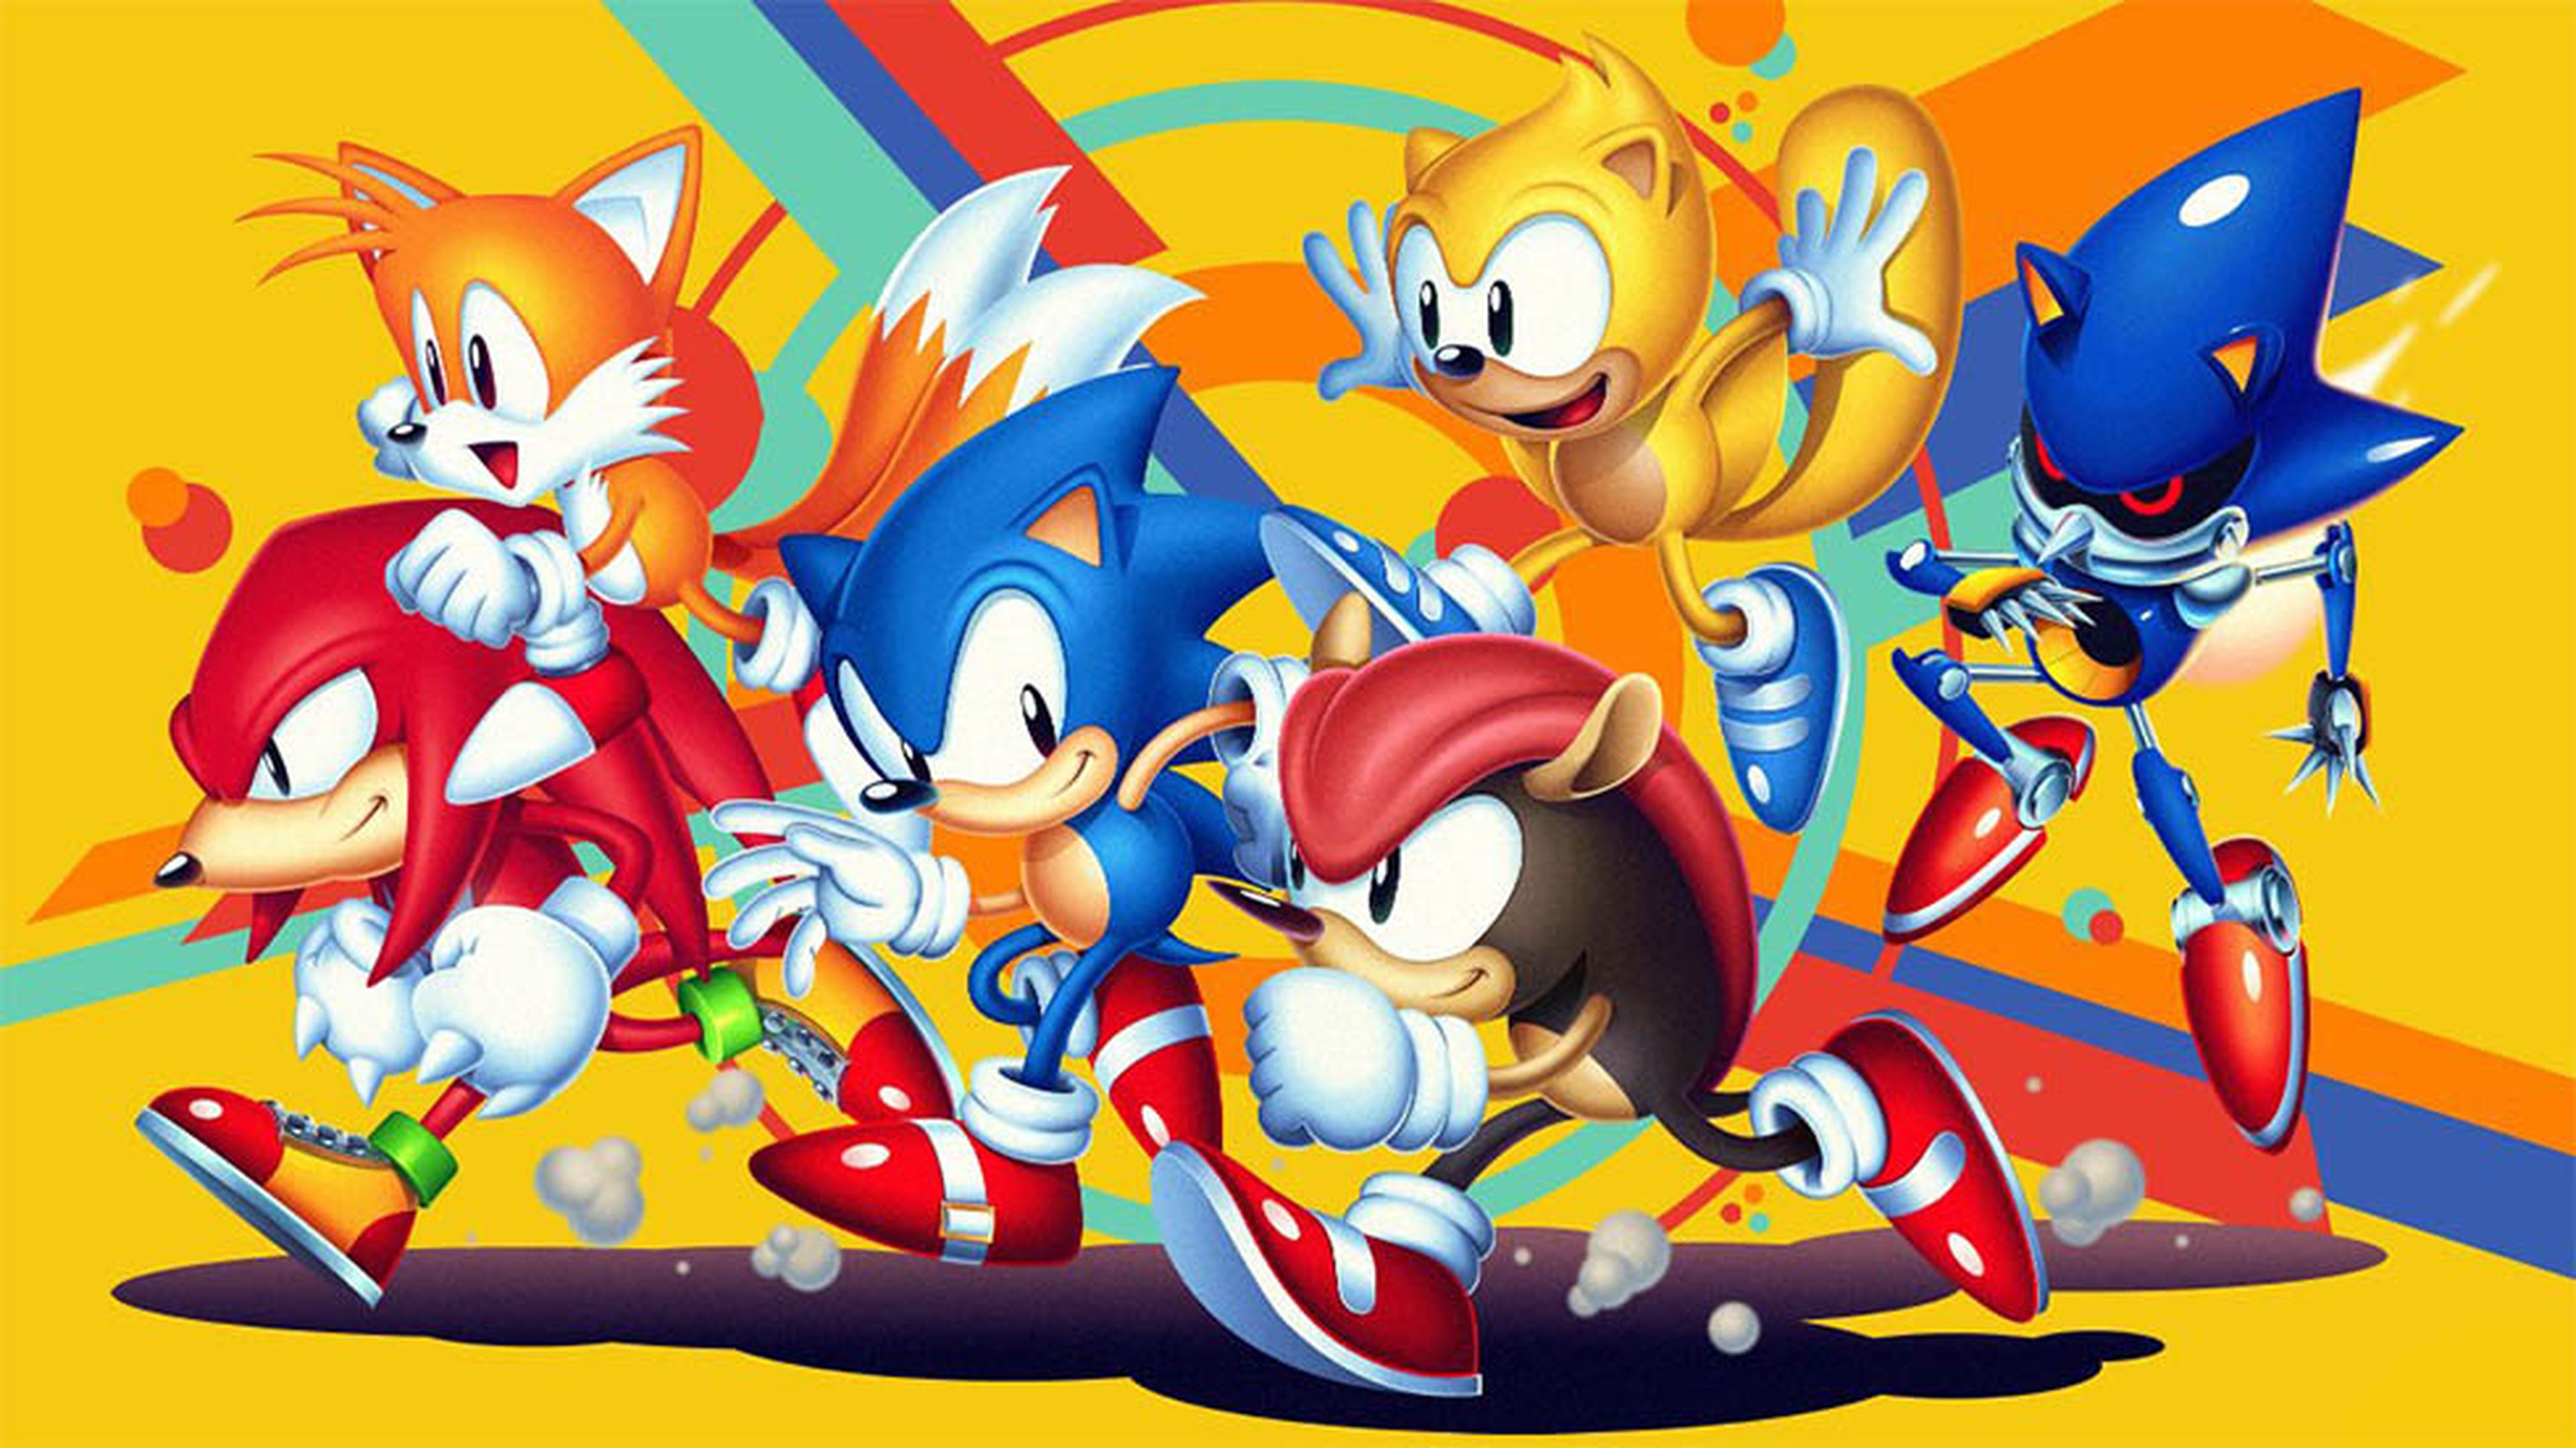 Oferta flash GAME: Sonic Mania Plus PS4 más auriculares Voltedge TX30 por  19,99 euros